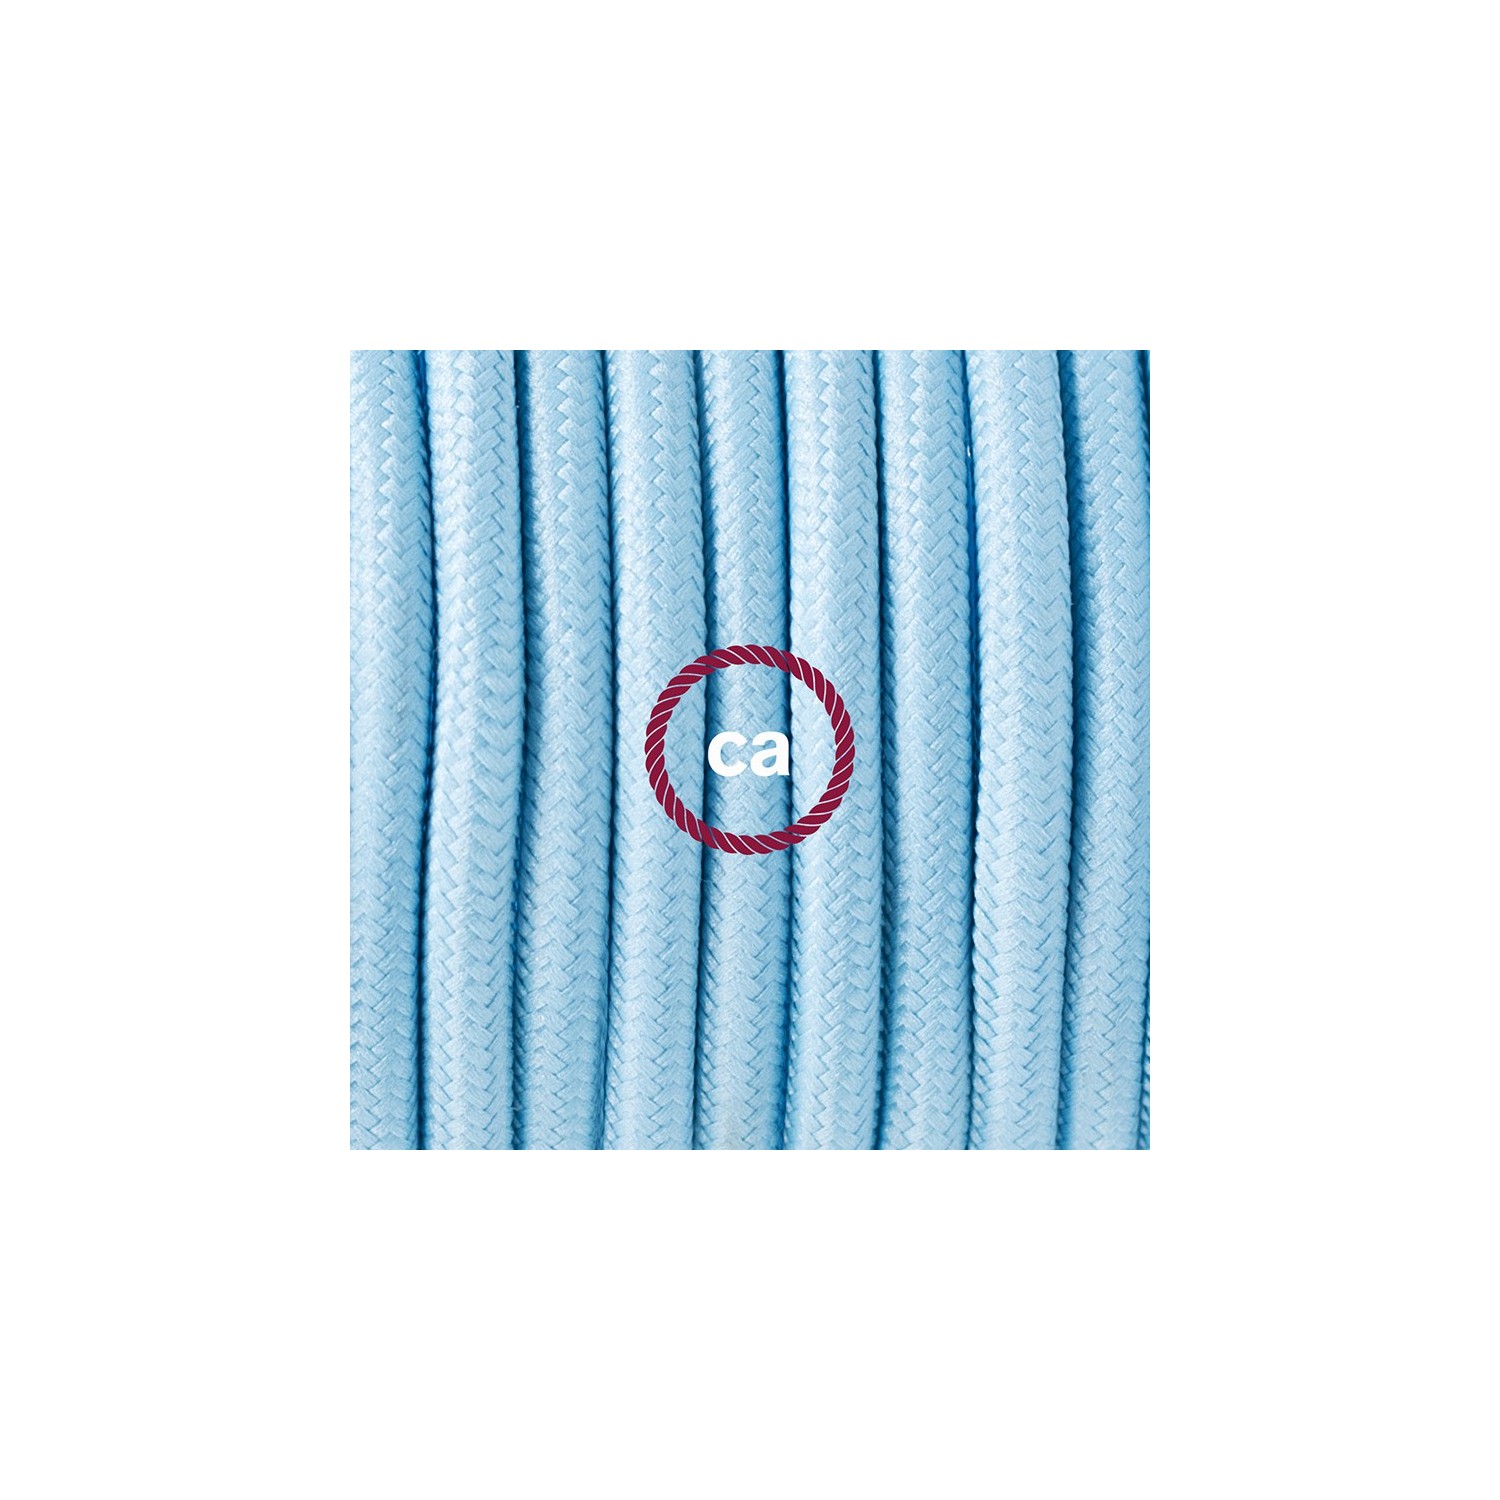 Ronde flexibele textielkabel van viscose met schakelaar en stekker. RM17 - babyblauw 1,80 m.